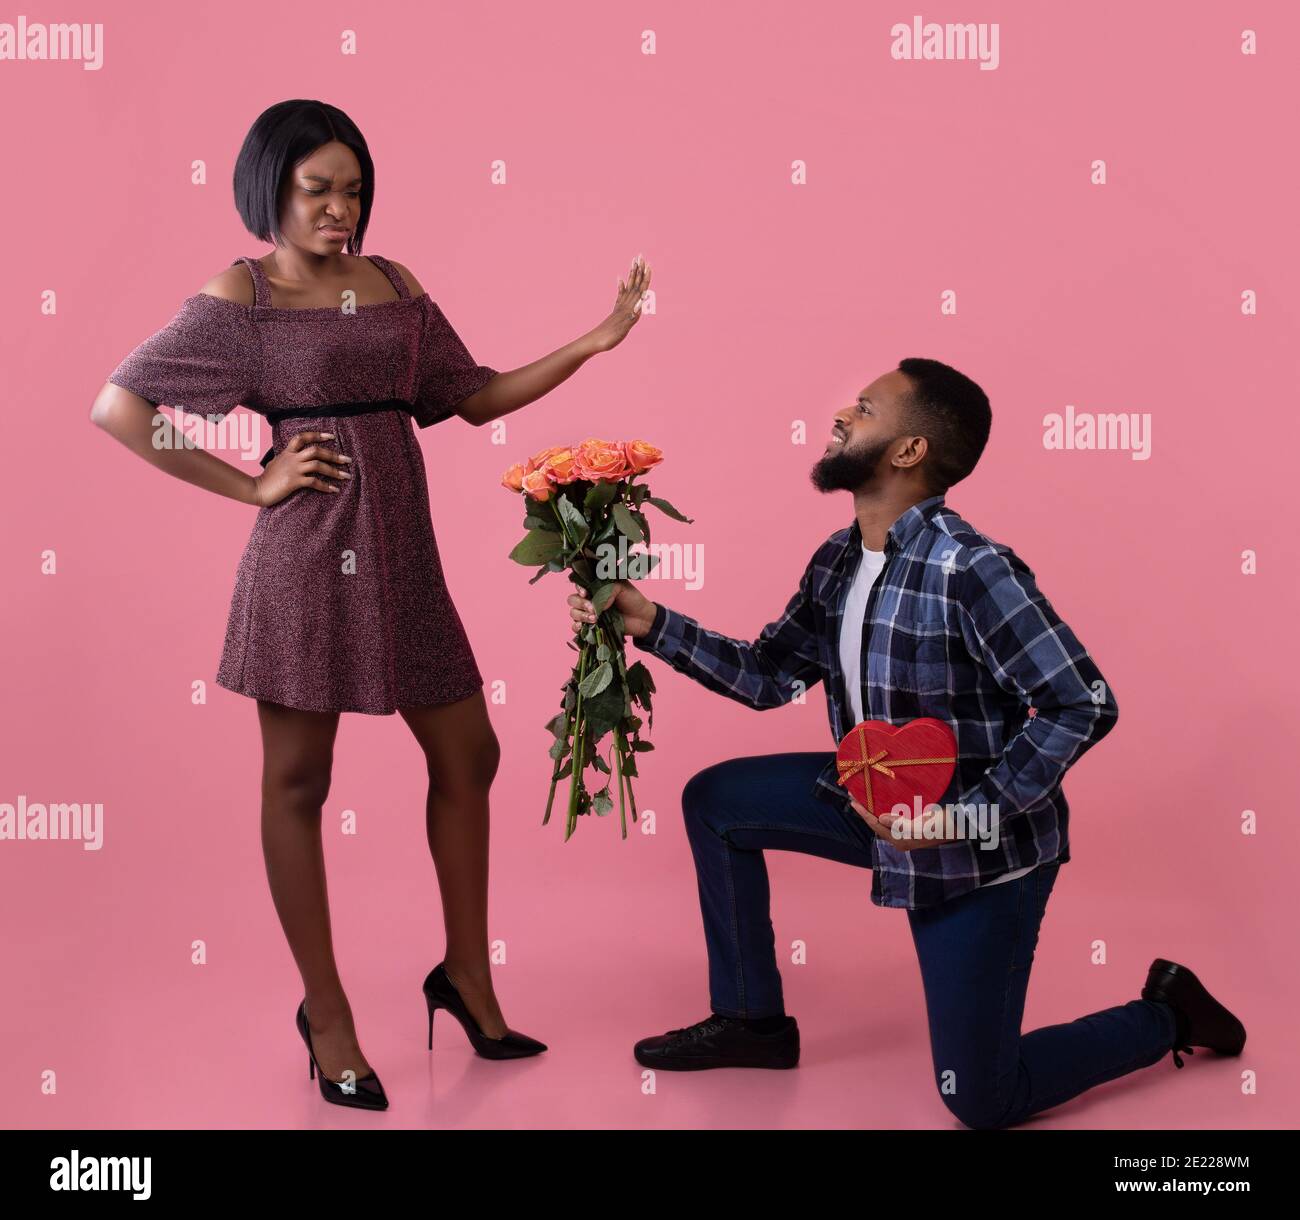 Homme noir debout sur un genou avec des fleurs et un cadeau pour la Saint-Valentin, jeune femme le rejetant sur fond rose Banque D'Images